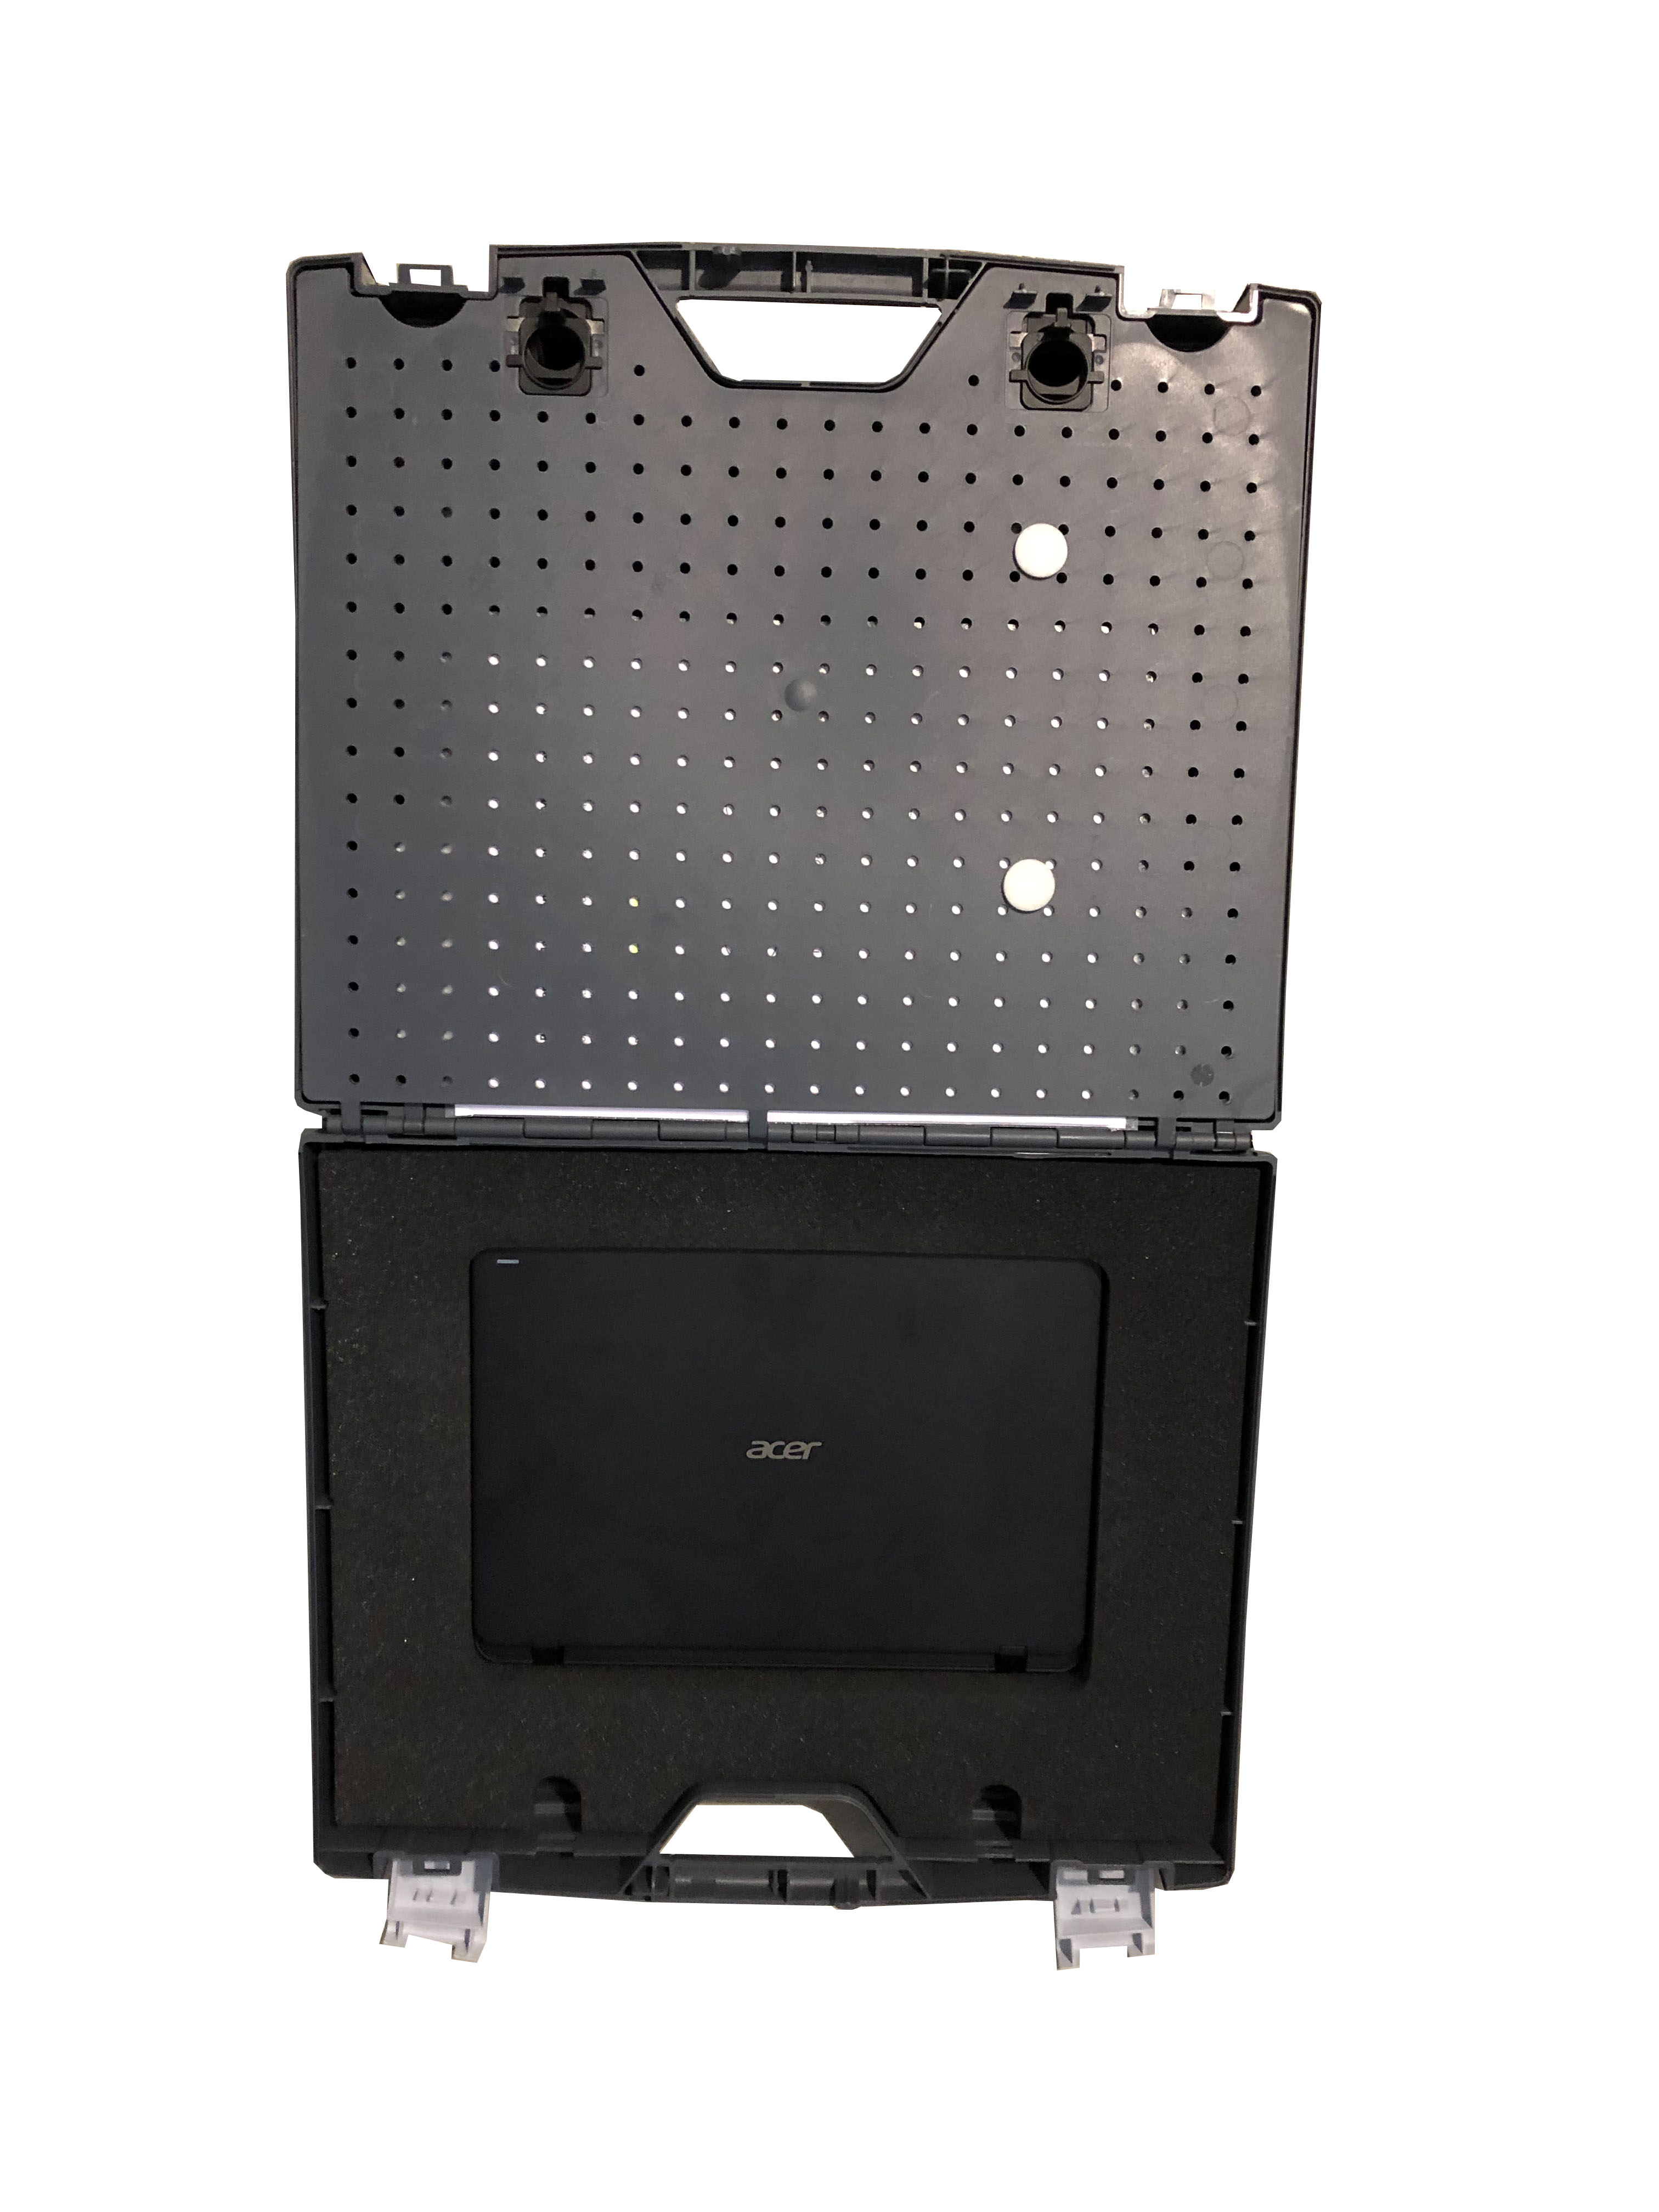 SDM 4000 RS-1 inteligentny system pomiaru prętów wiązałkowych bezprzewodowy